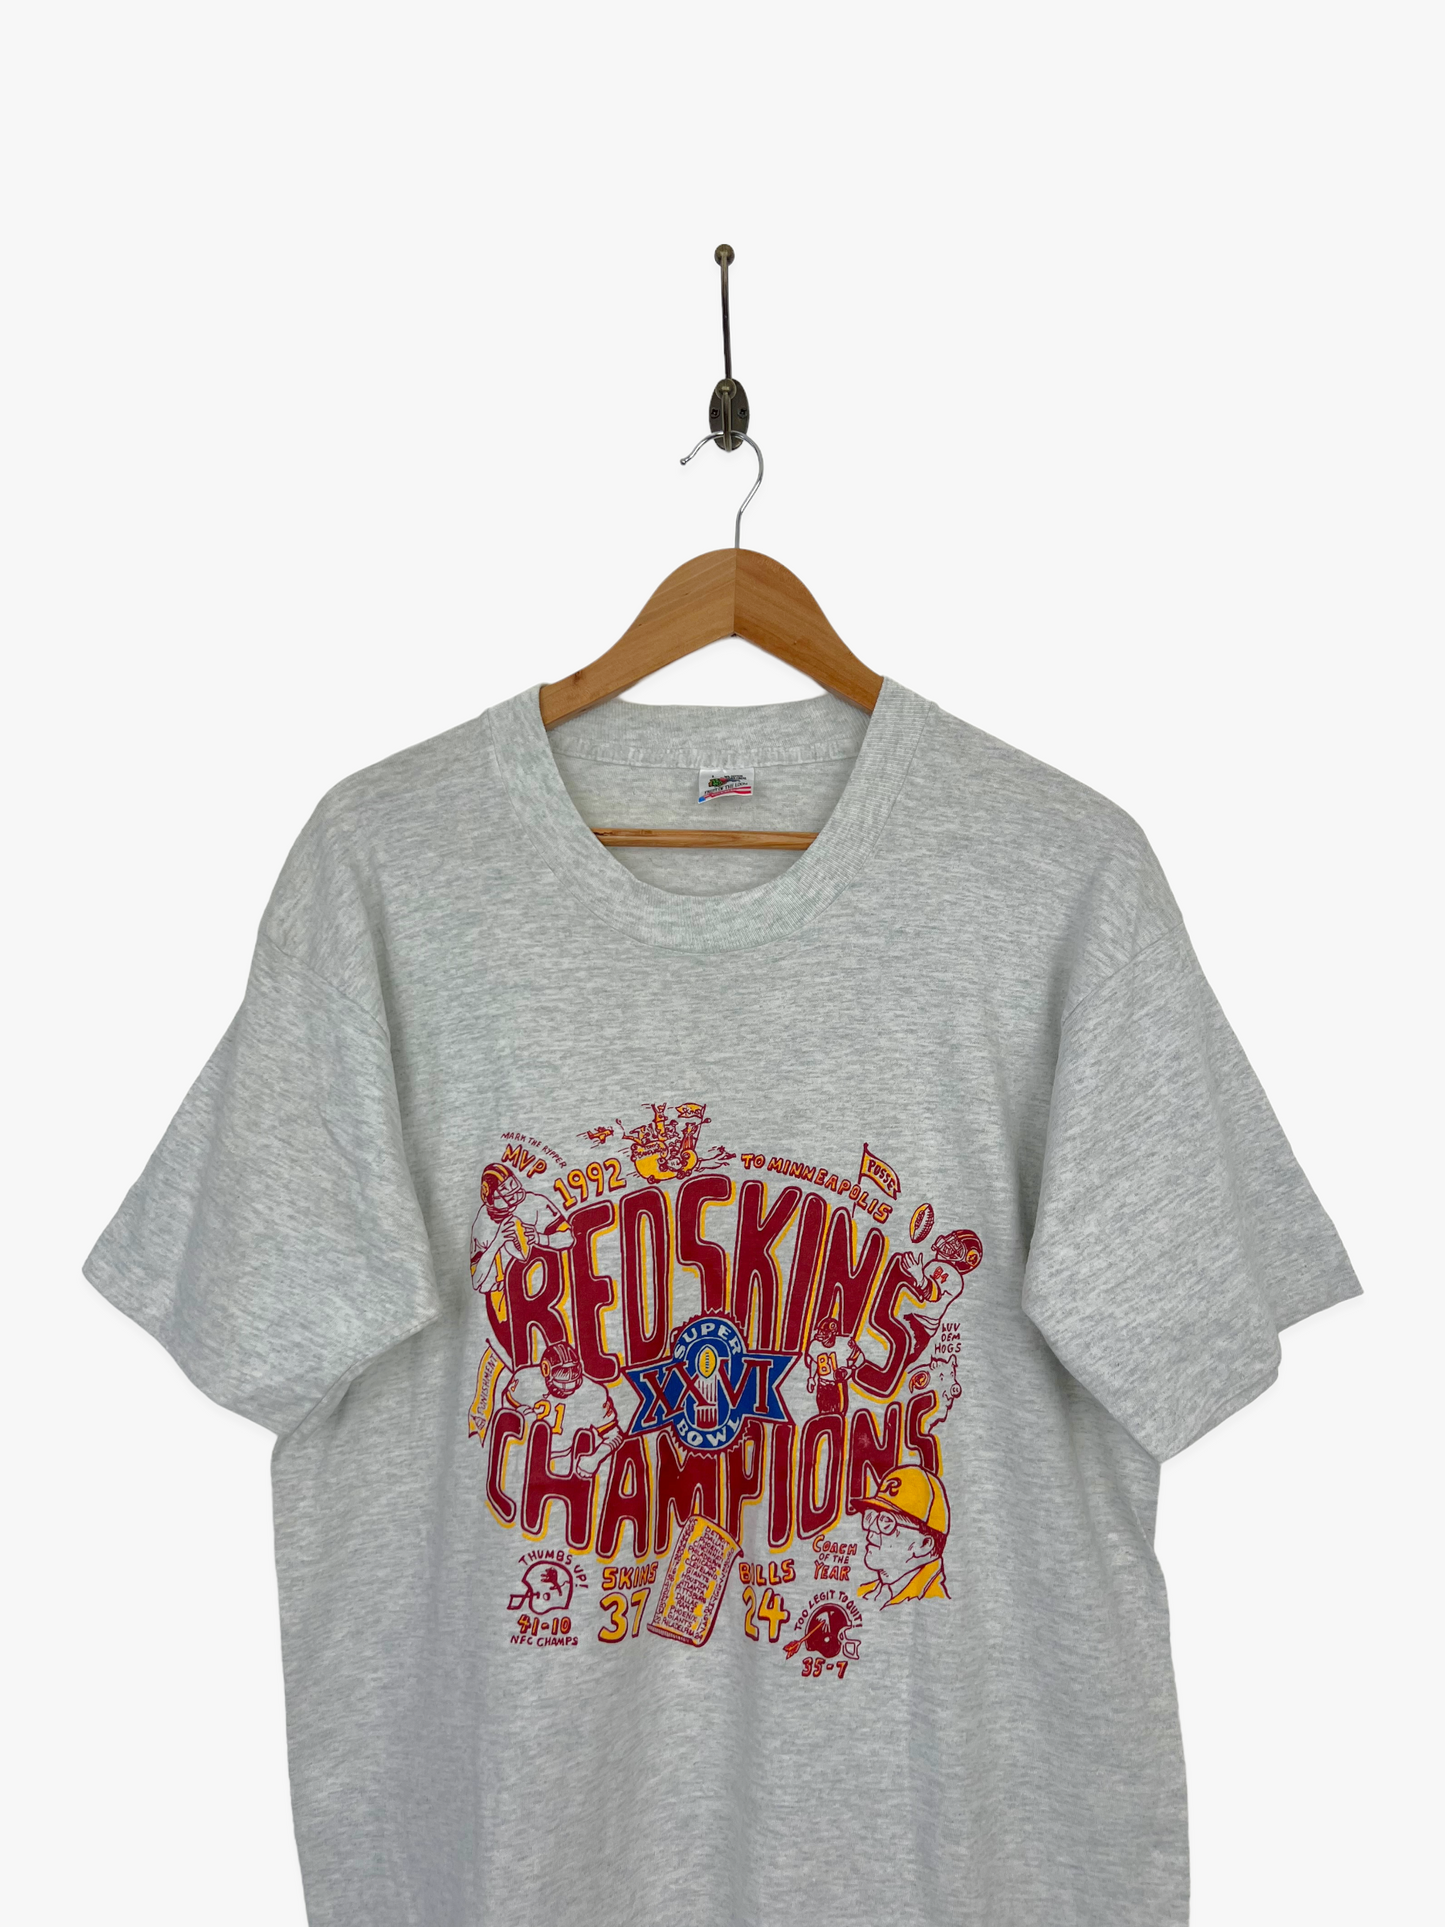 1992 Washington Redskins NFL USA Made Vintage T-Shirt Size L